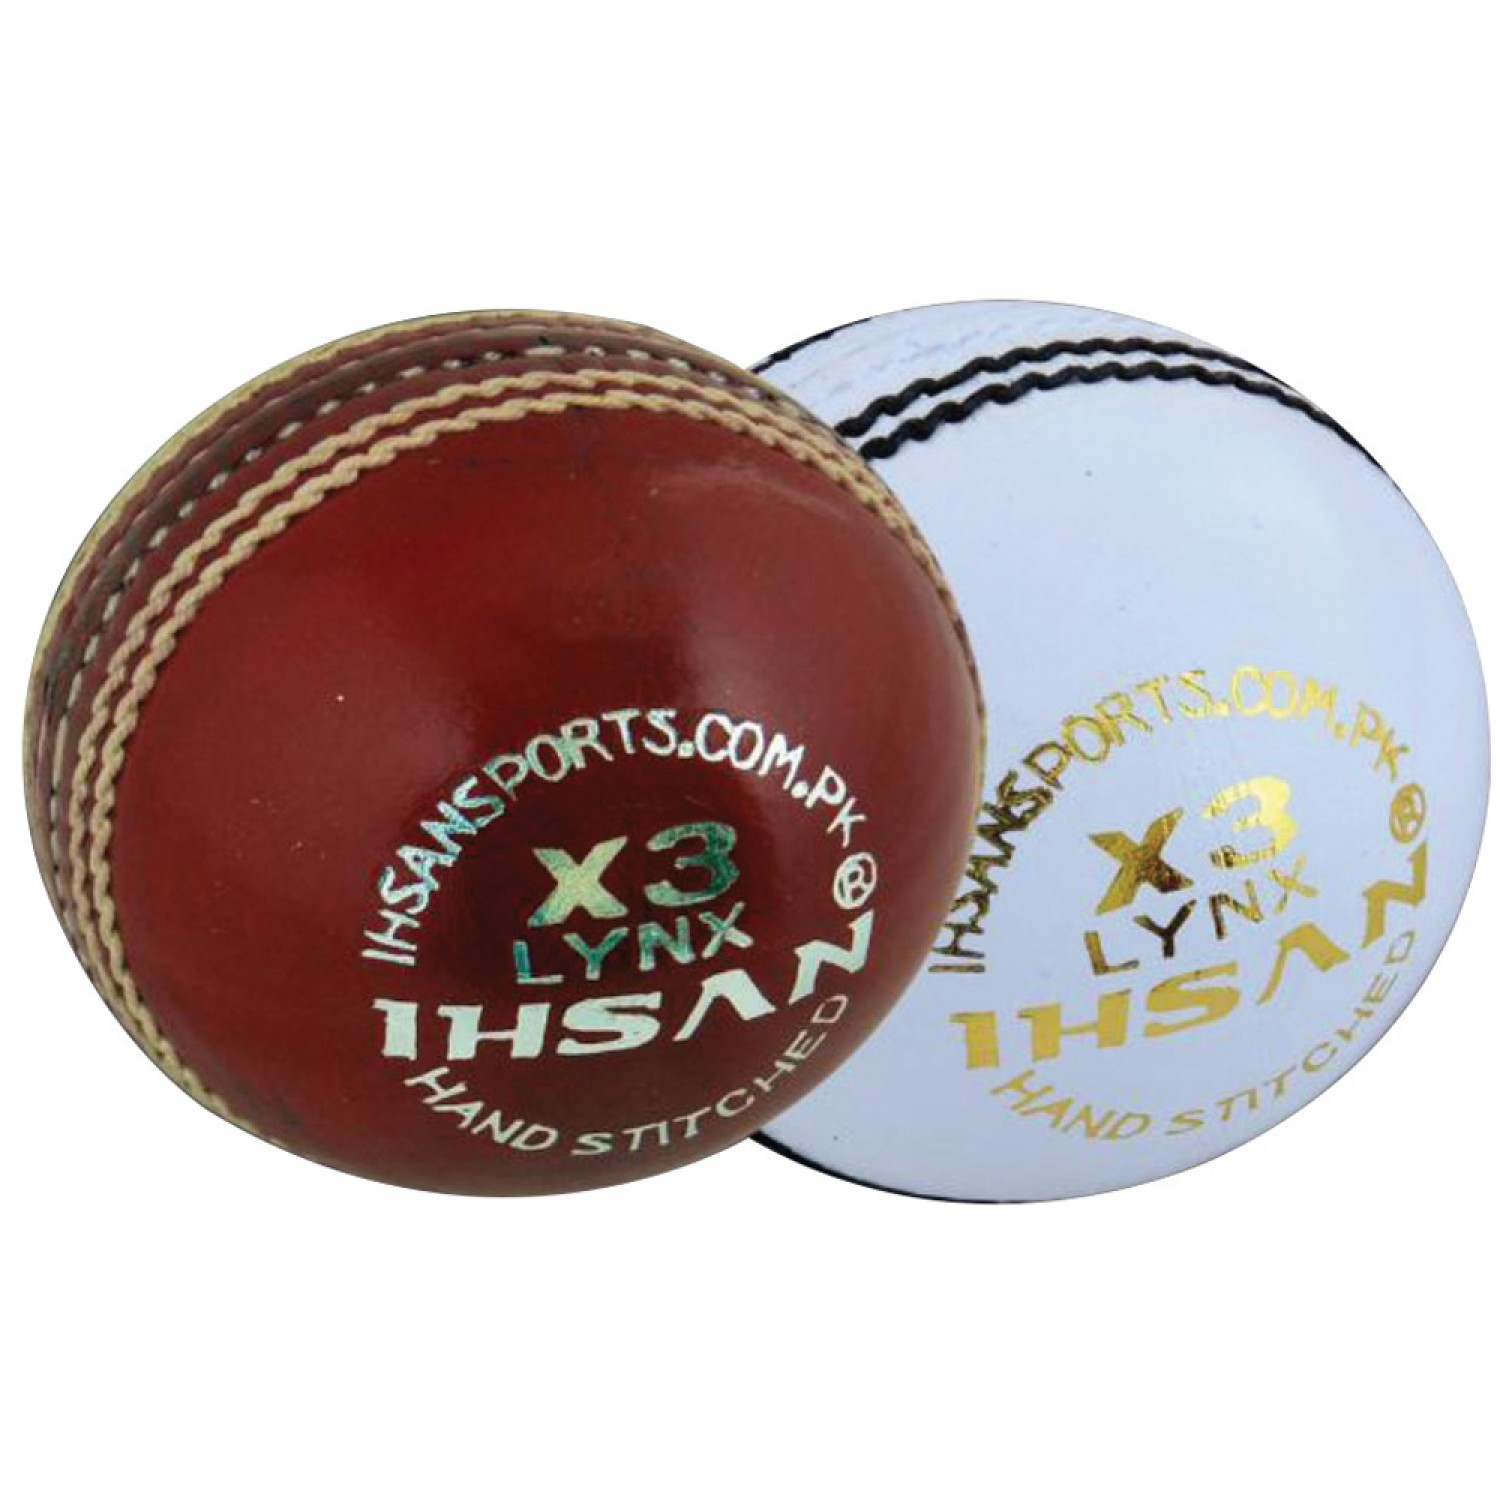 Cricket Balls LYNX X-3